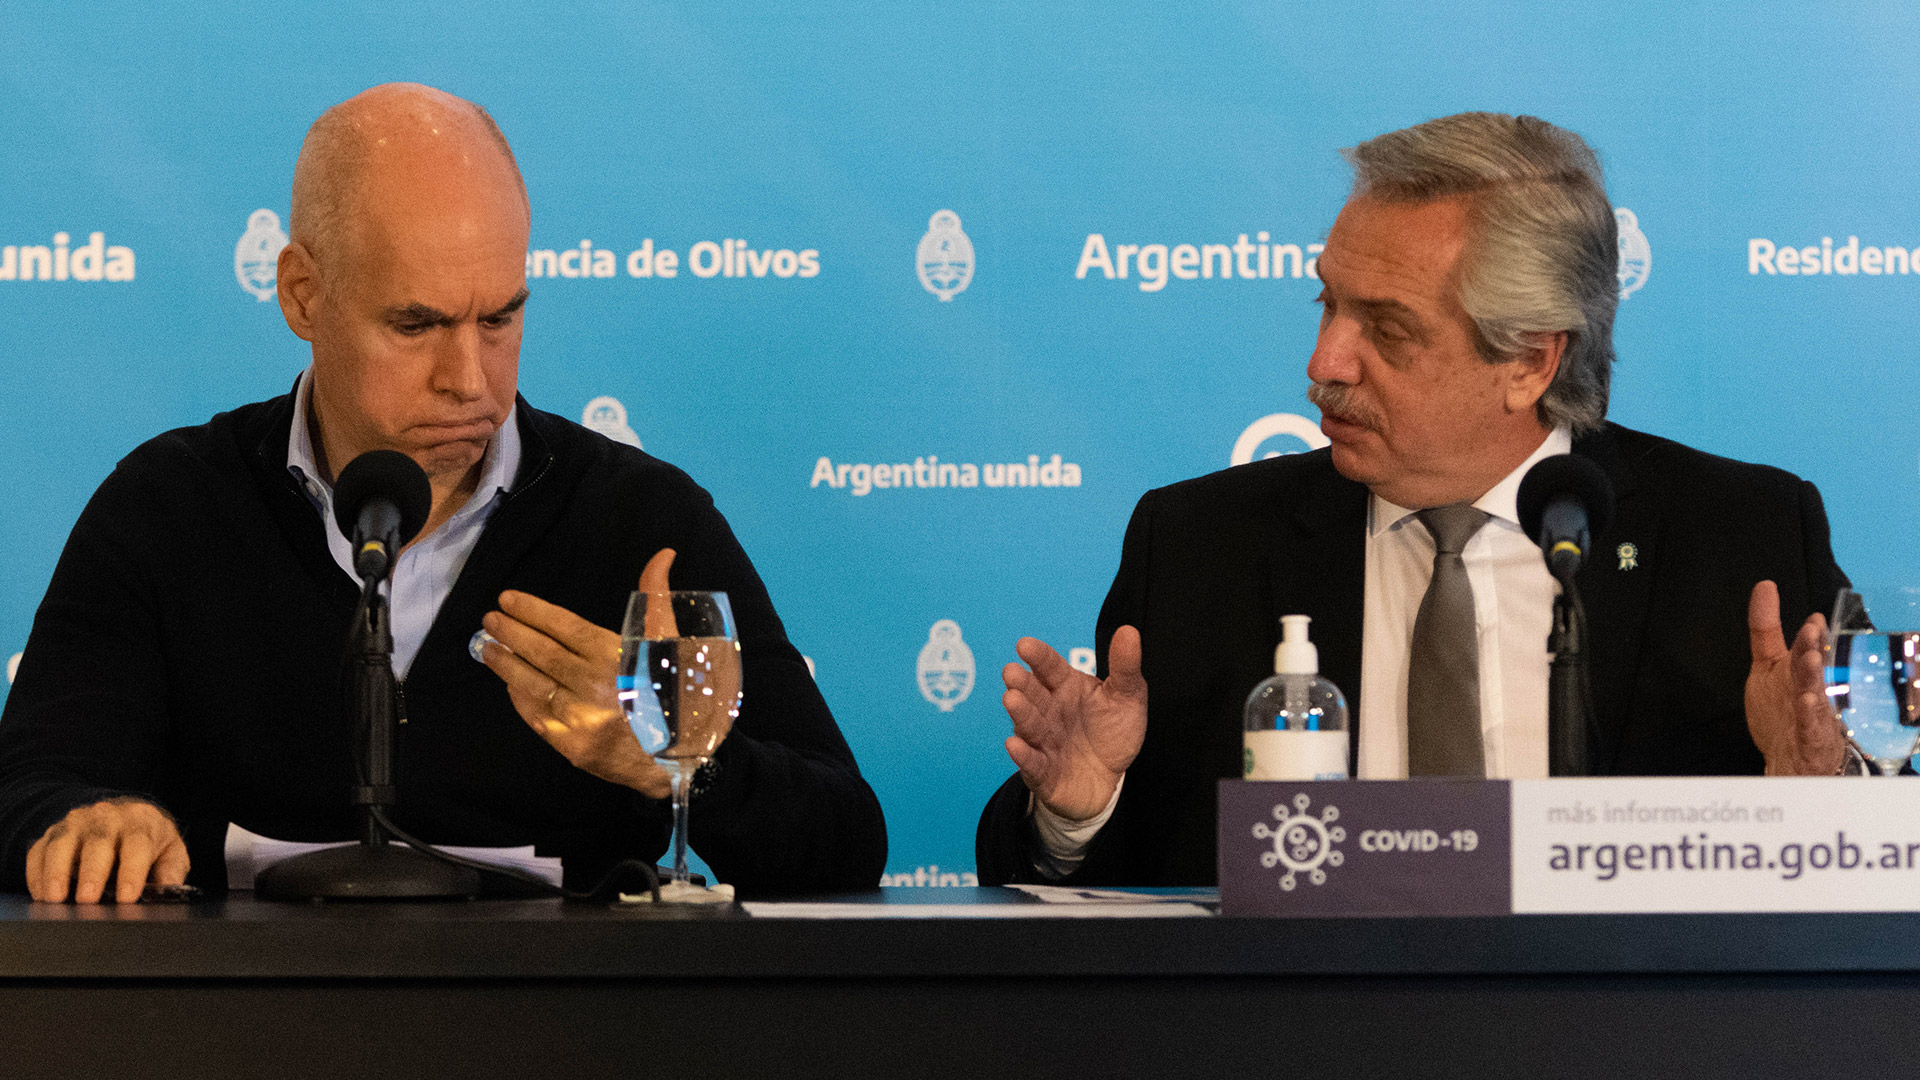 Alberto Fernández y Horacio Rodríguez Larreta en la quinta presidencial de Olivos